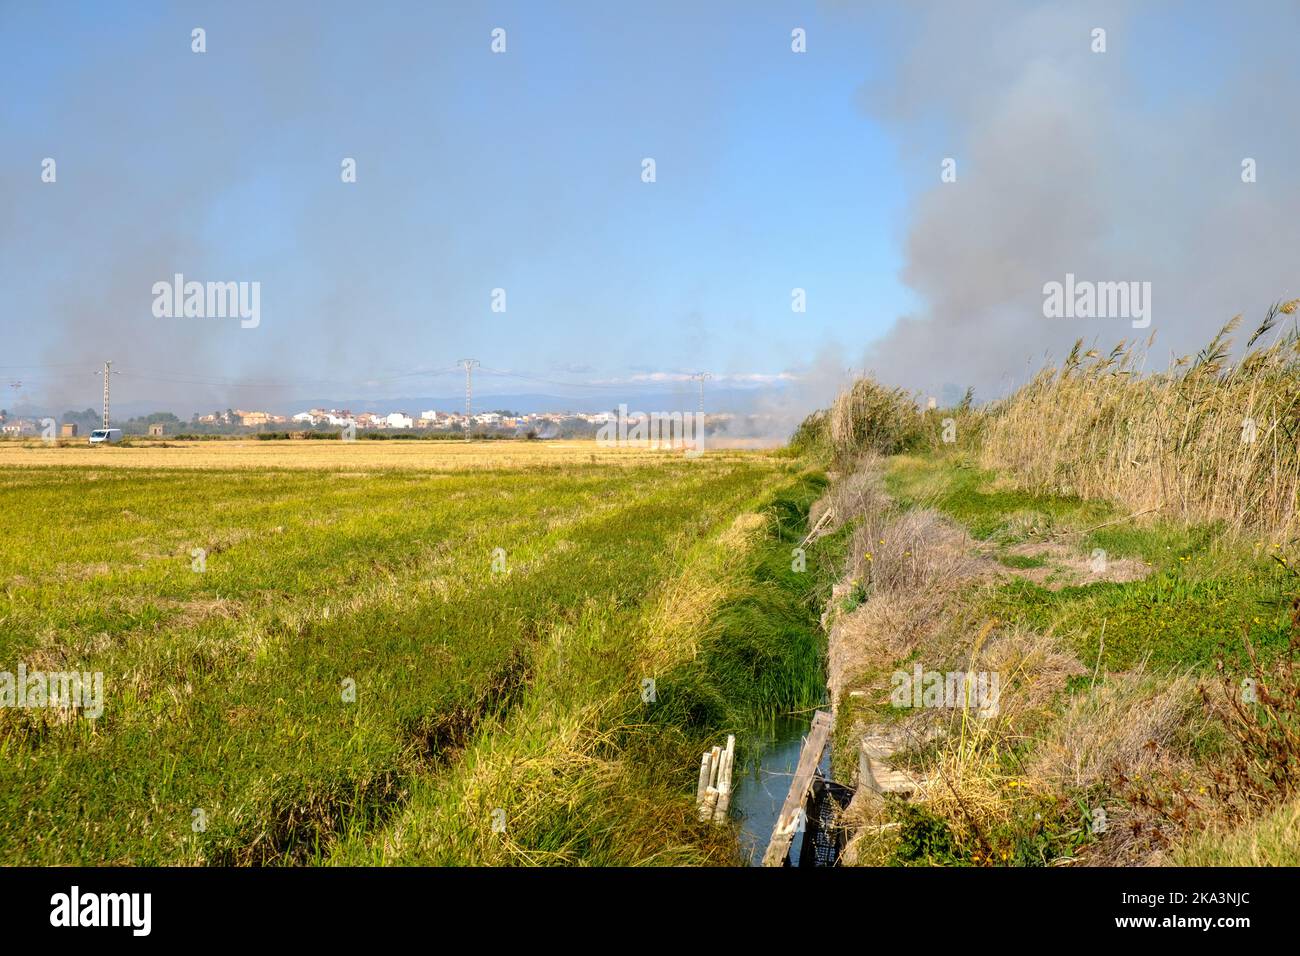 Brennen von Reisstoppeln brennendes Stroh in Reisbauern in Albufera Valencia Spanien, Umweltverschmutzung Umweltproblem, dunkle Himmelswolken Stockfoto